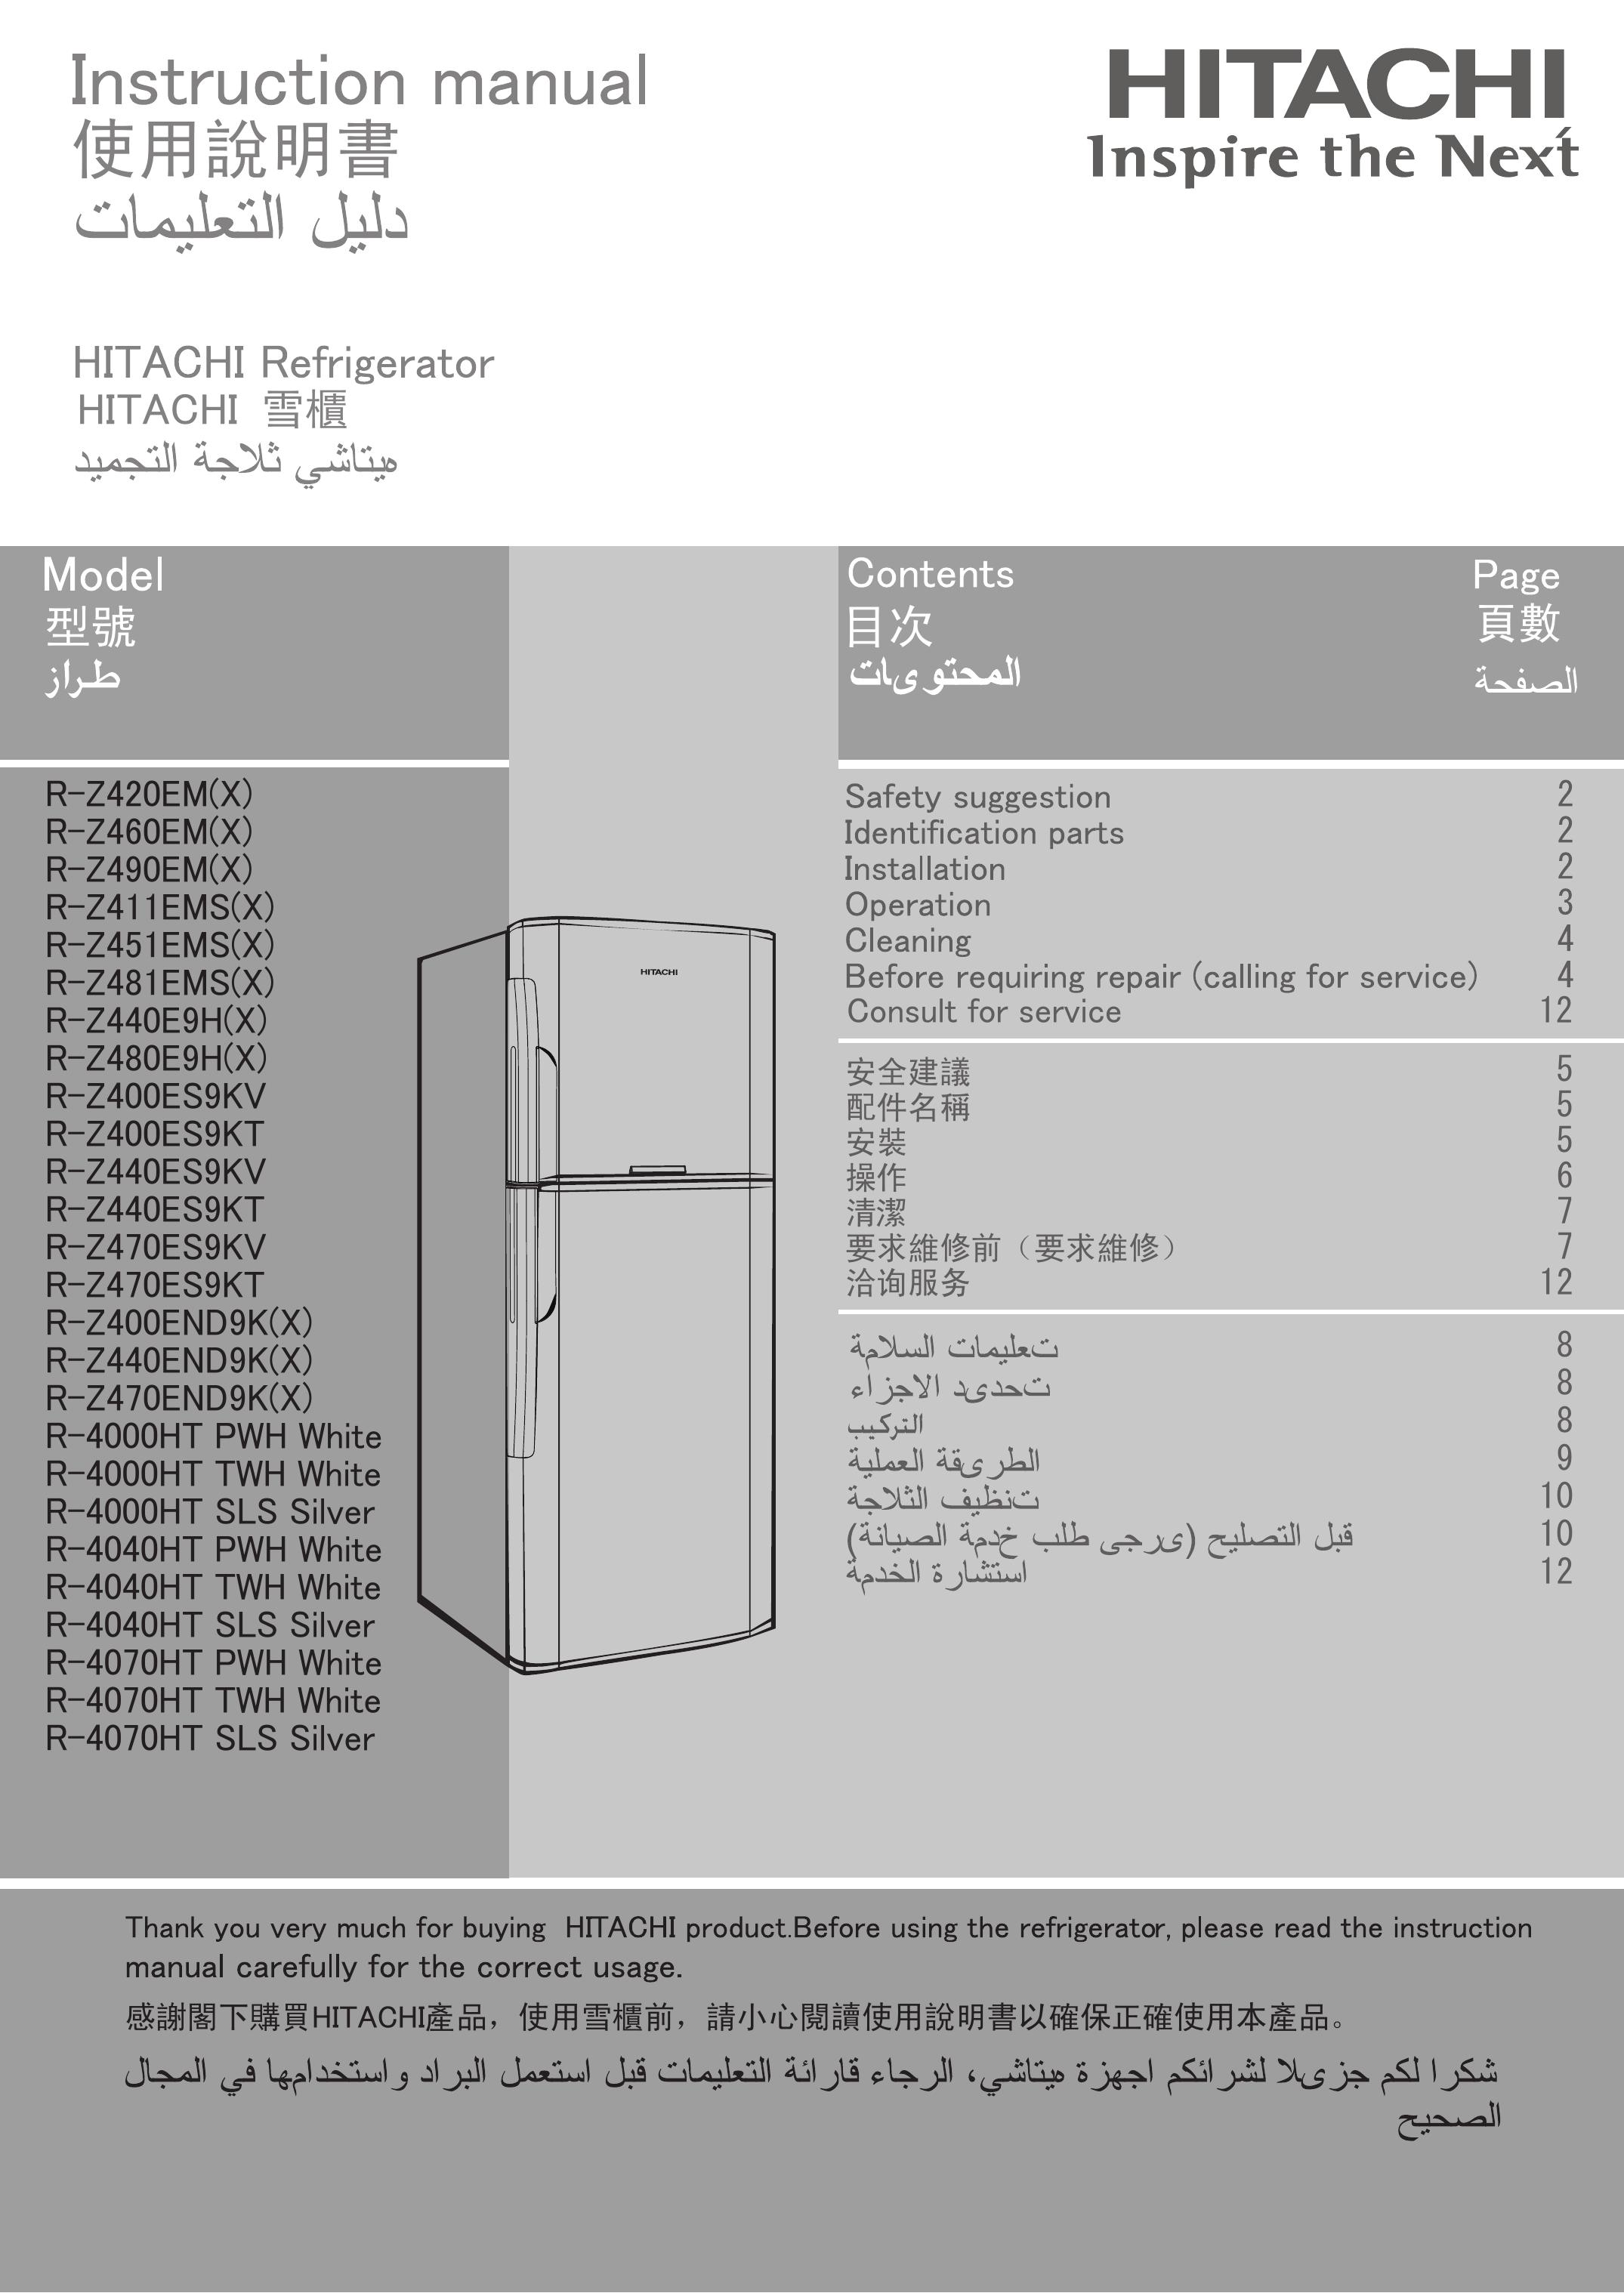 Hitachi R-4000HT SLS Silver Refrigerator User Manual